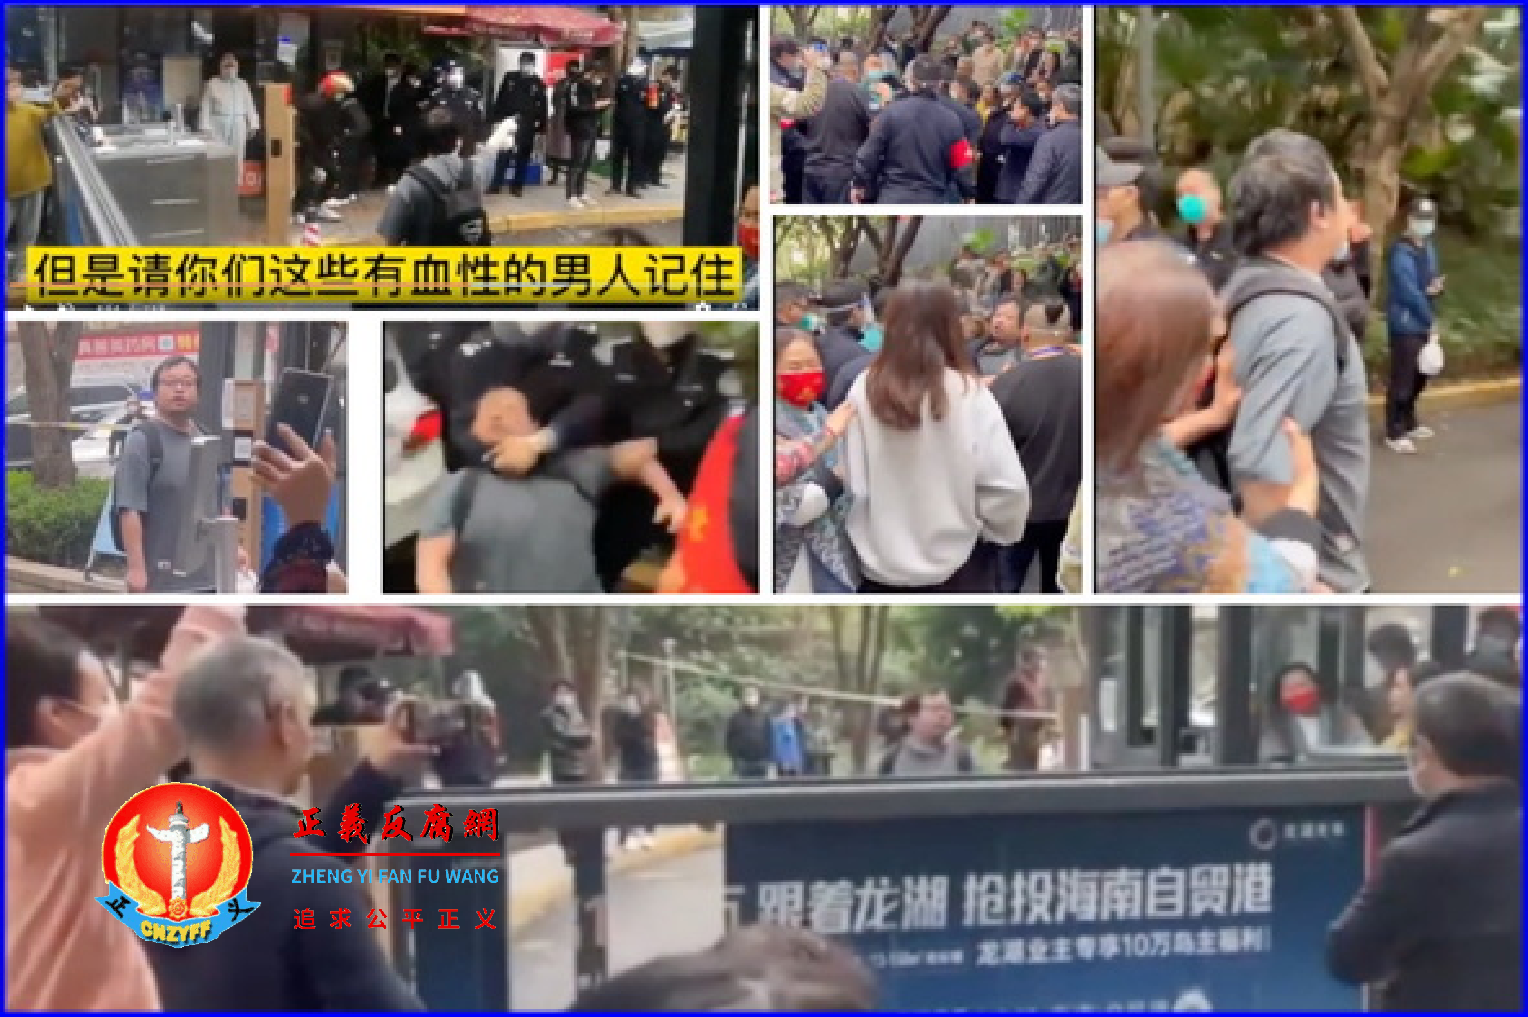 微视频｜重庆男子喊“不自由毋宁死” 警察抓捕围观民众救回引共鸣 